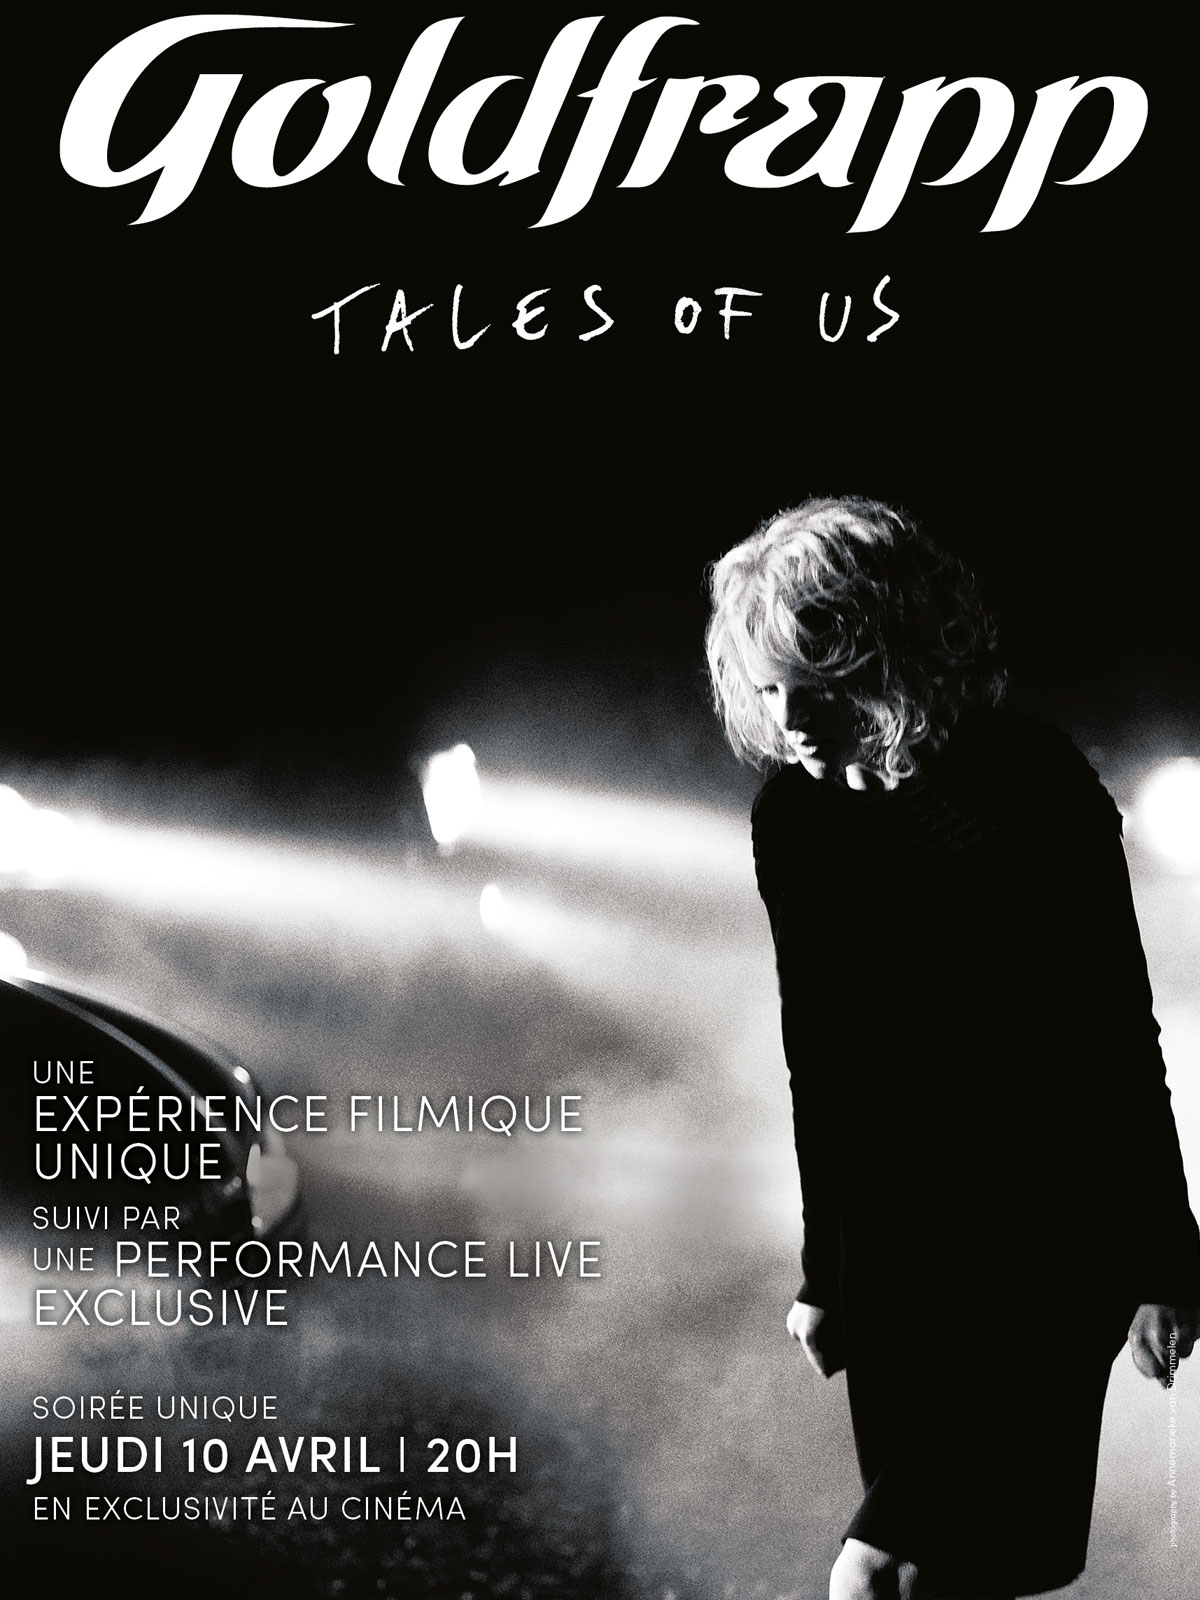 Goldfrapp - Tales of us (Pathé Live)